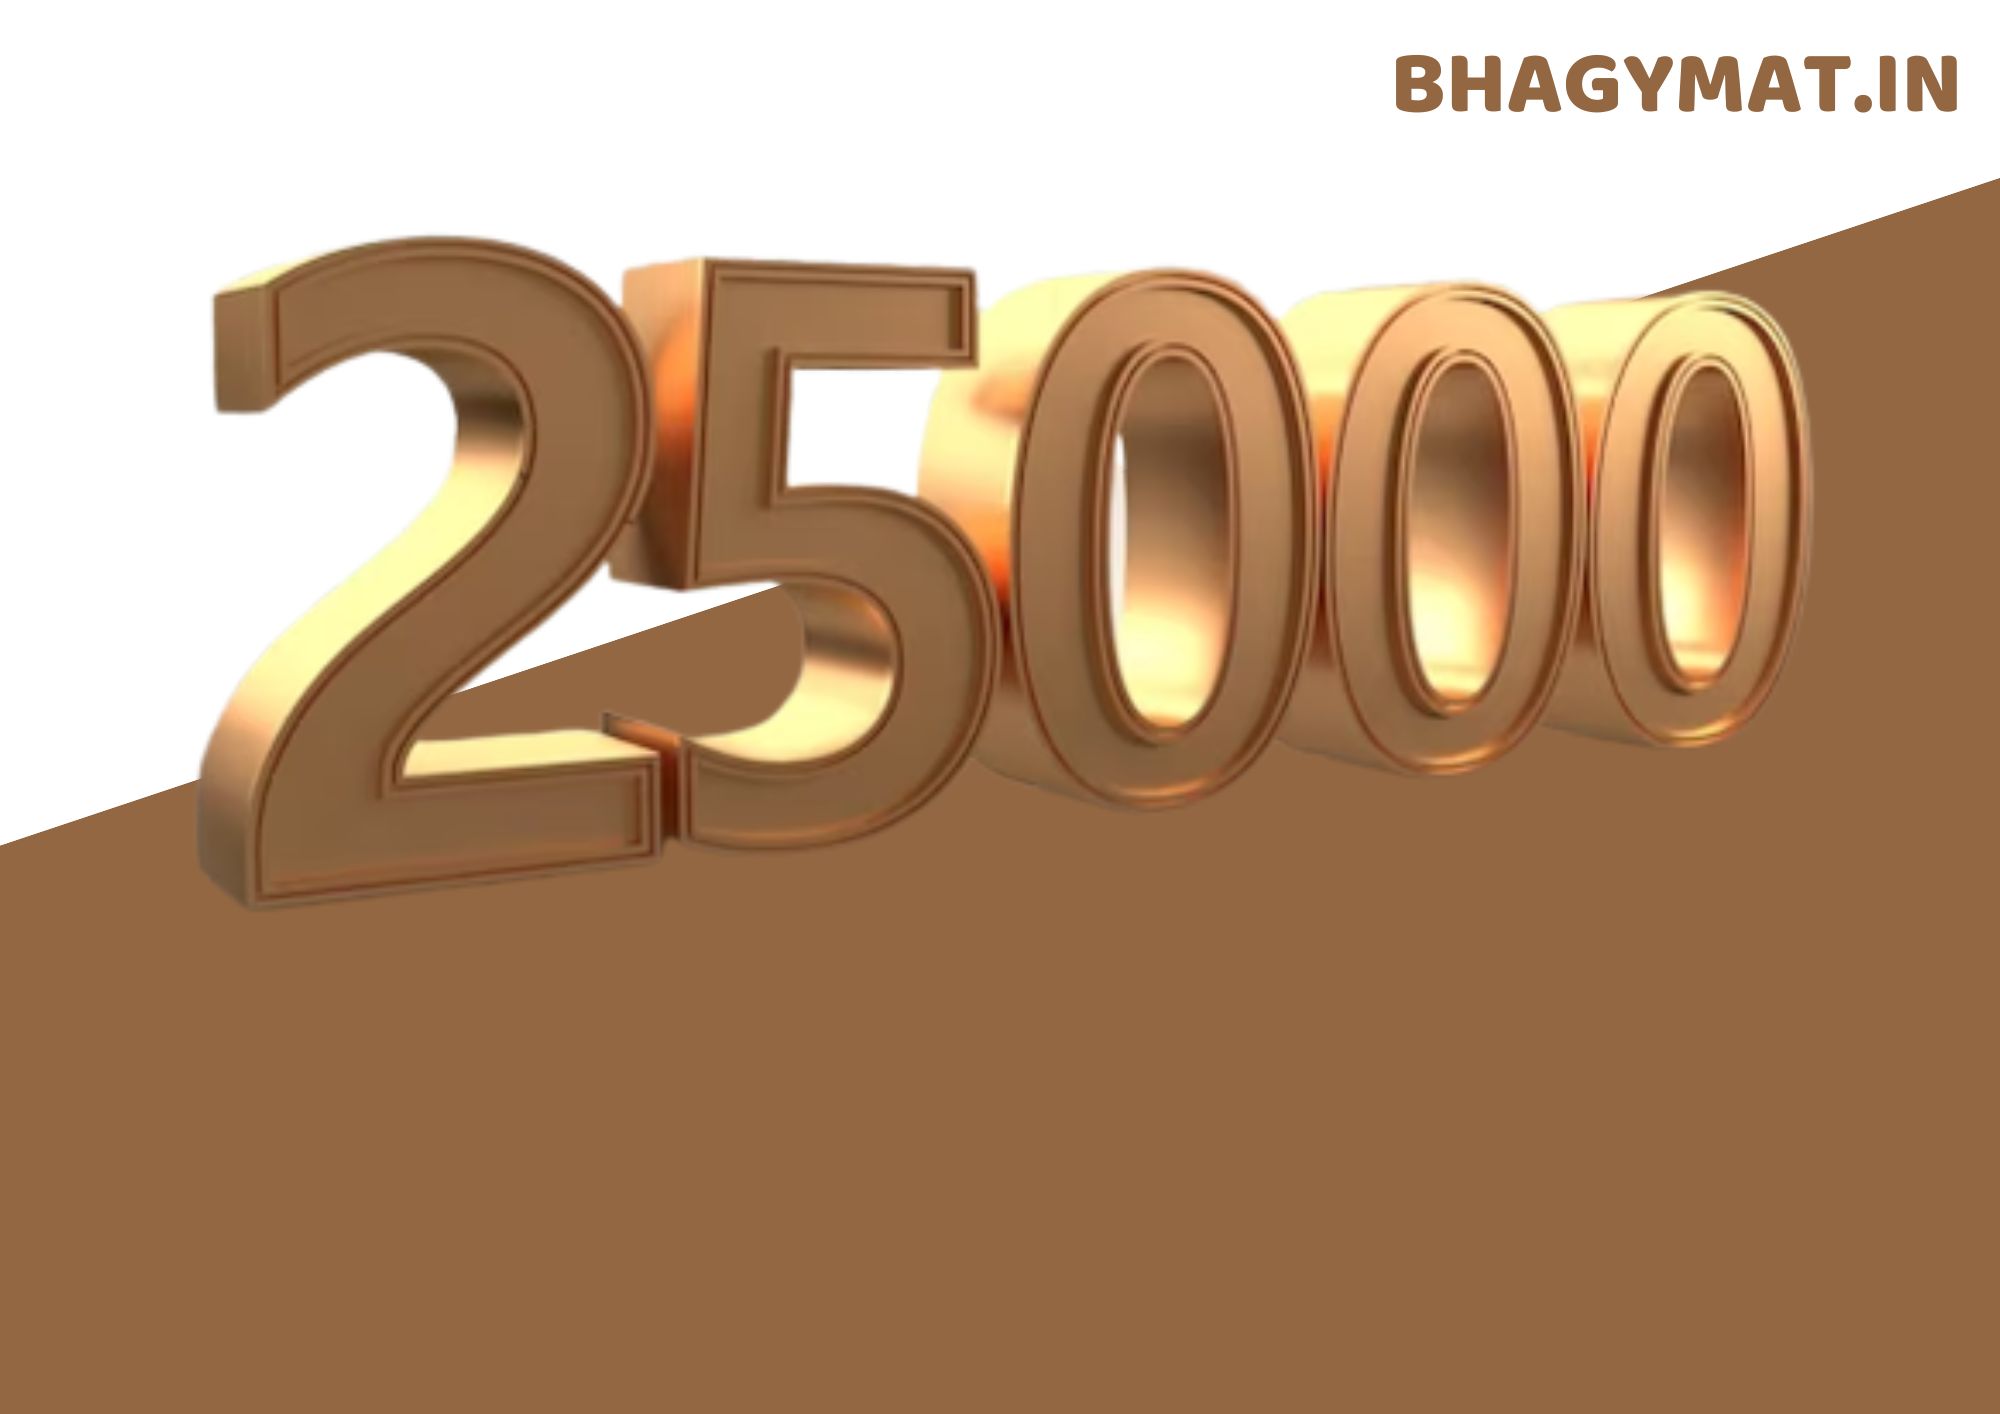 25000 हिंदी में कैसे लिखे जाते हैं (25000 Hindi Mein Kaise Likhen Jate Hai) - 25000 Hindi Mai